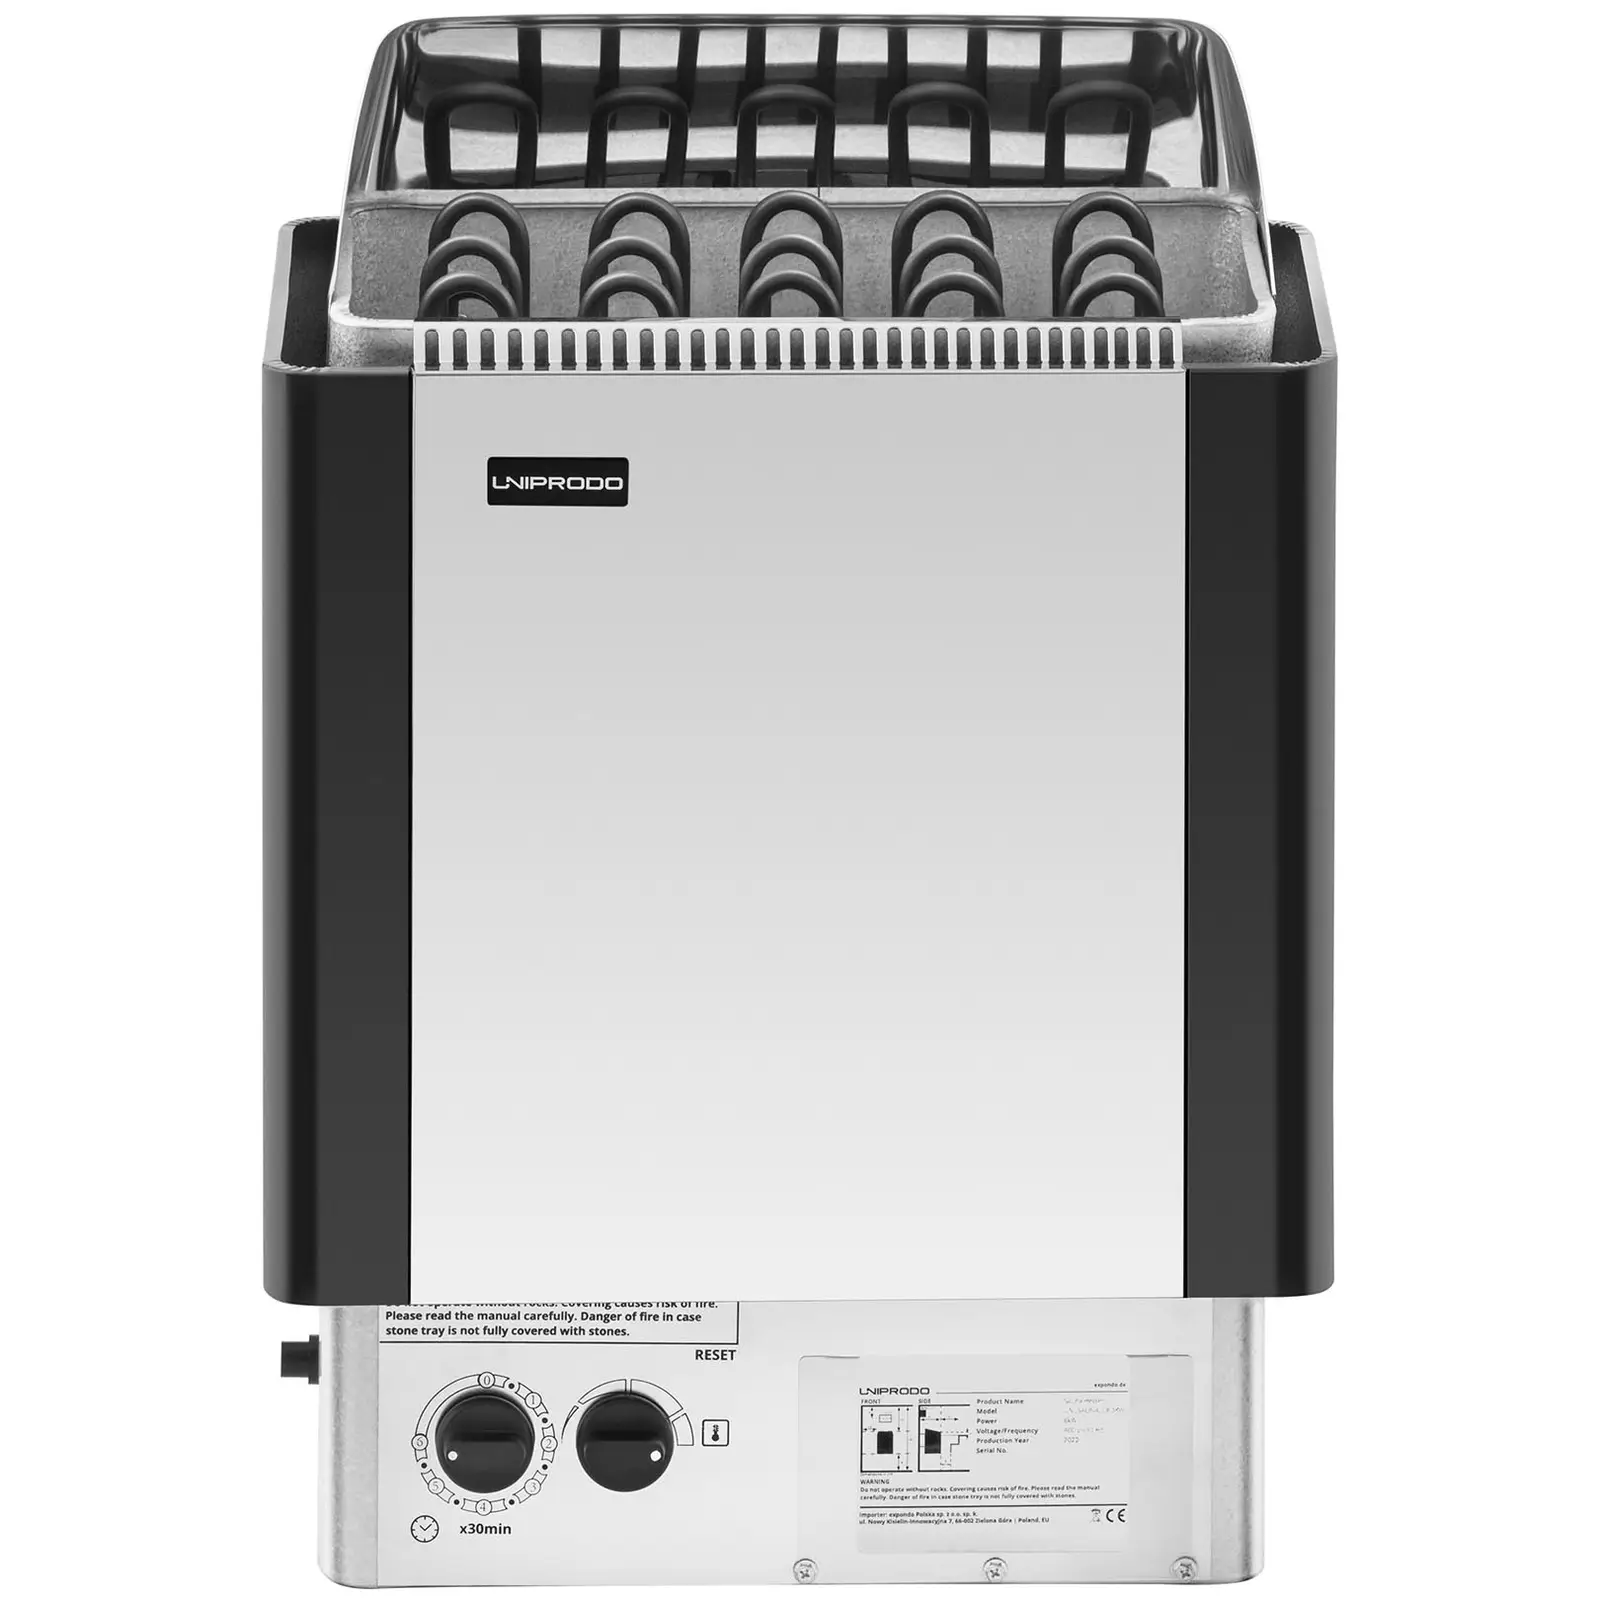 Saunaofen - 8 kW - 30 bis 110 °C - inkl. Steuerung